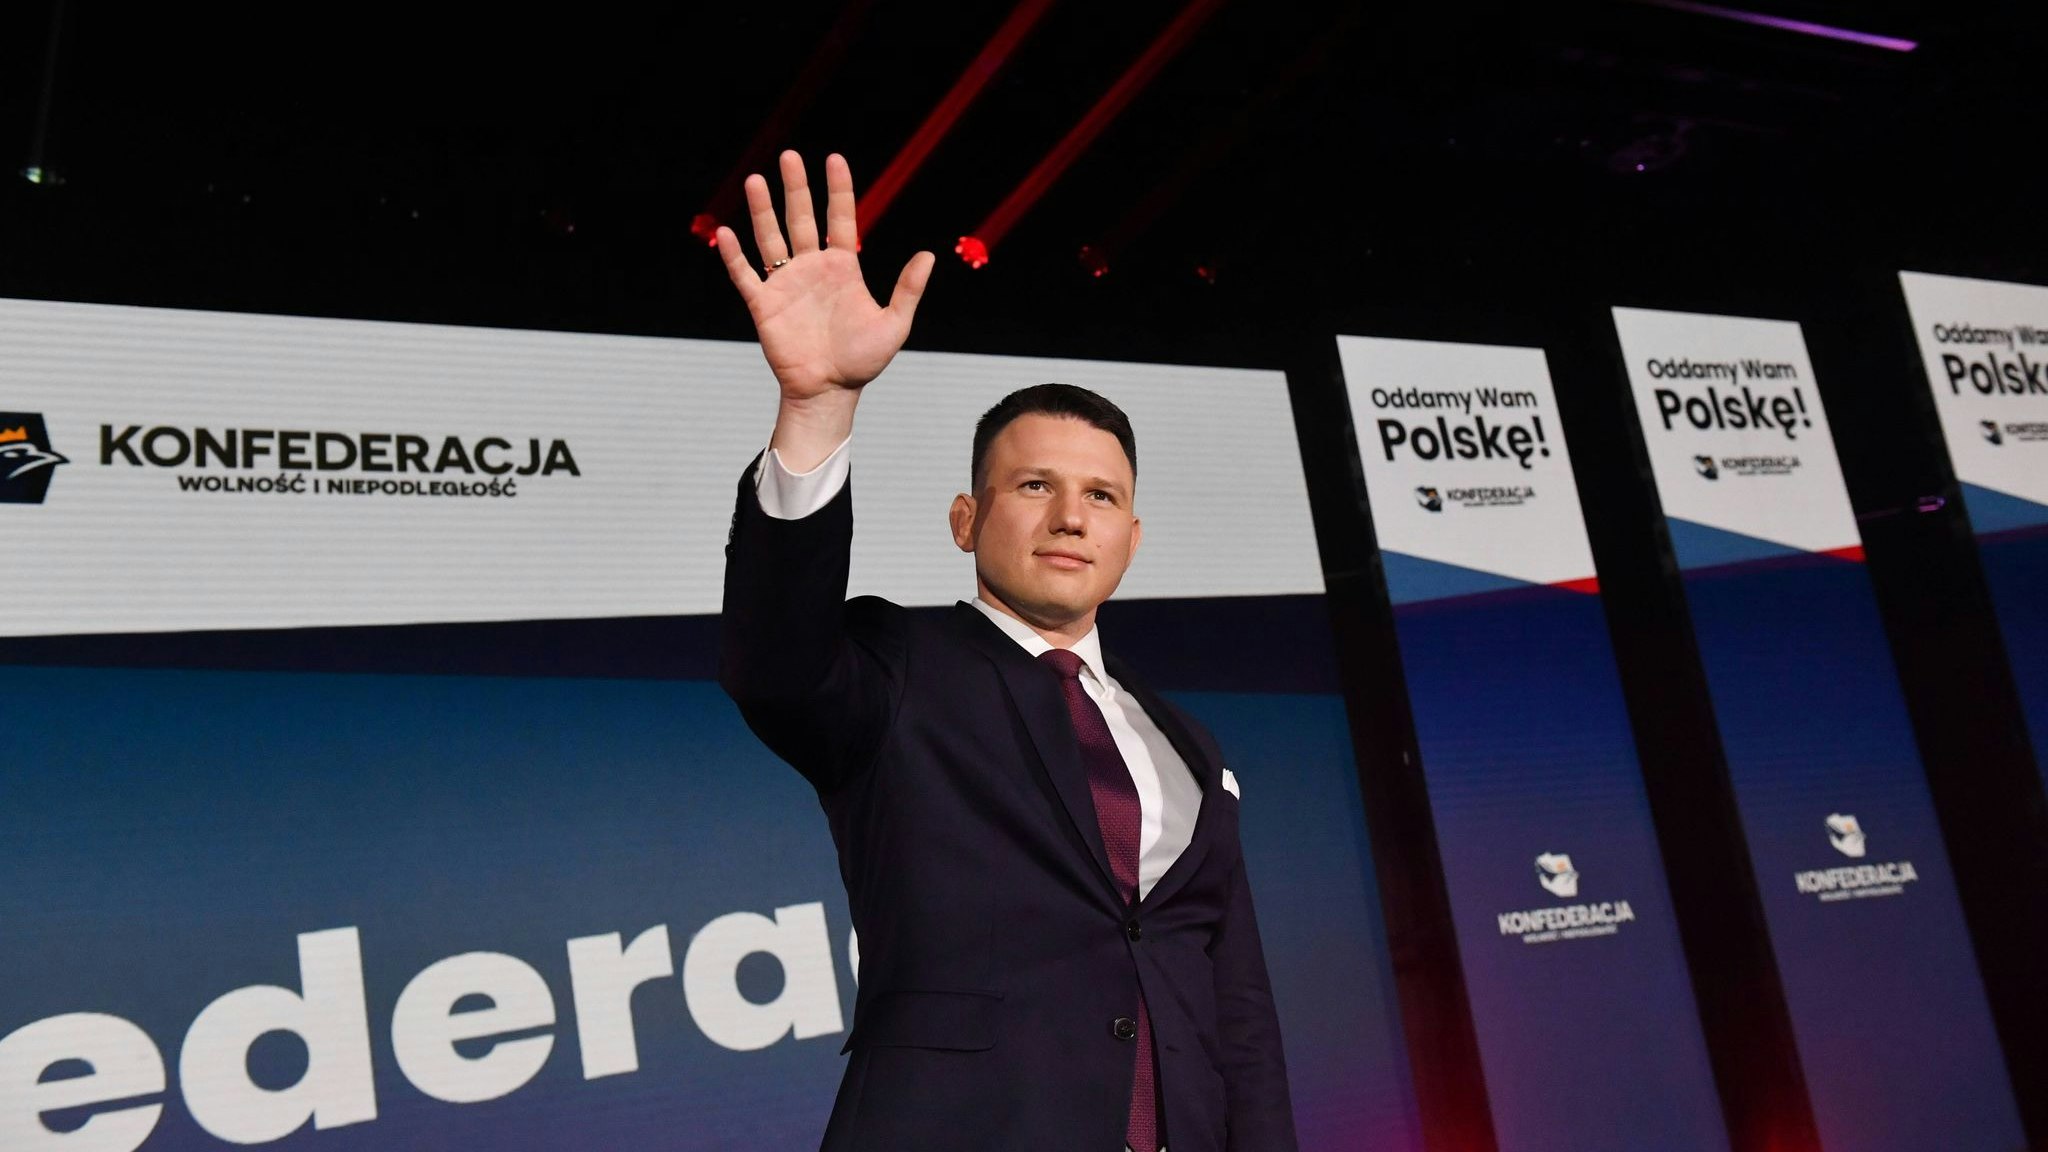 Der rechte polnische Politiker Slawomir Mentzen spricht während eines politischen Kongresses in Warschau. Foto: dpa/Nowaki